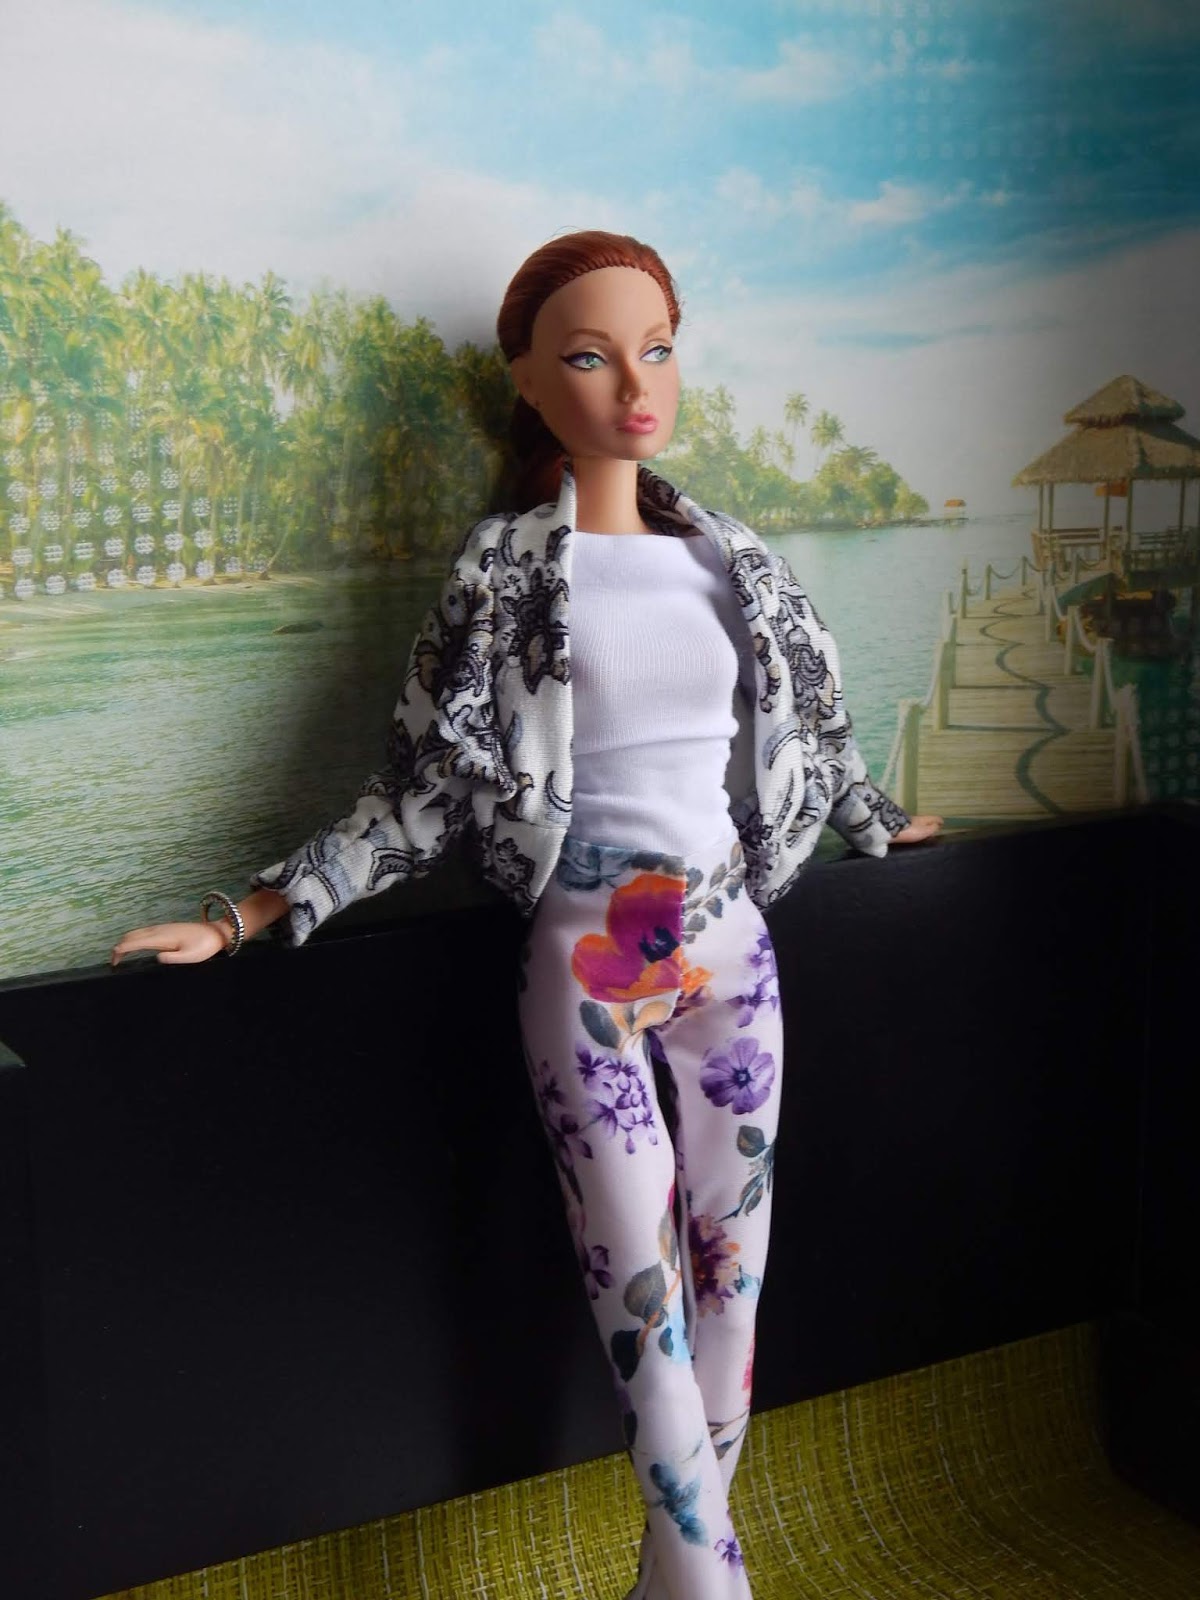 Eu Amo Artesanato: Roupa para Boneca Barbie com molde